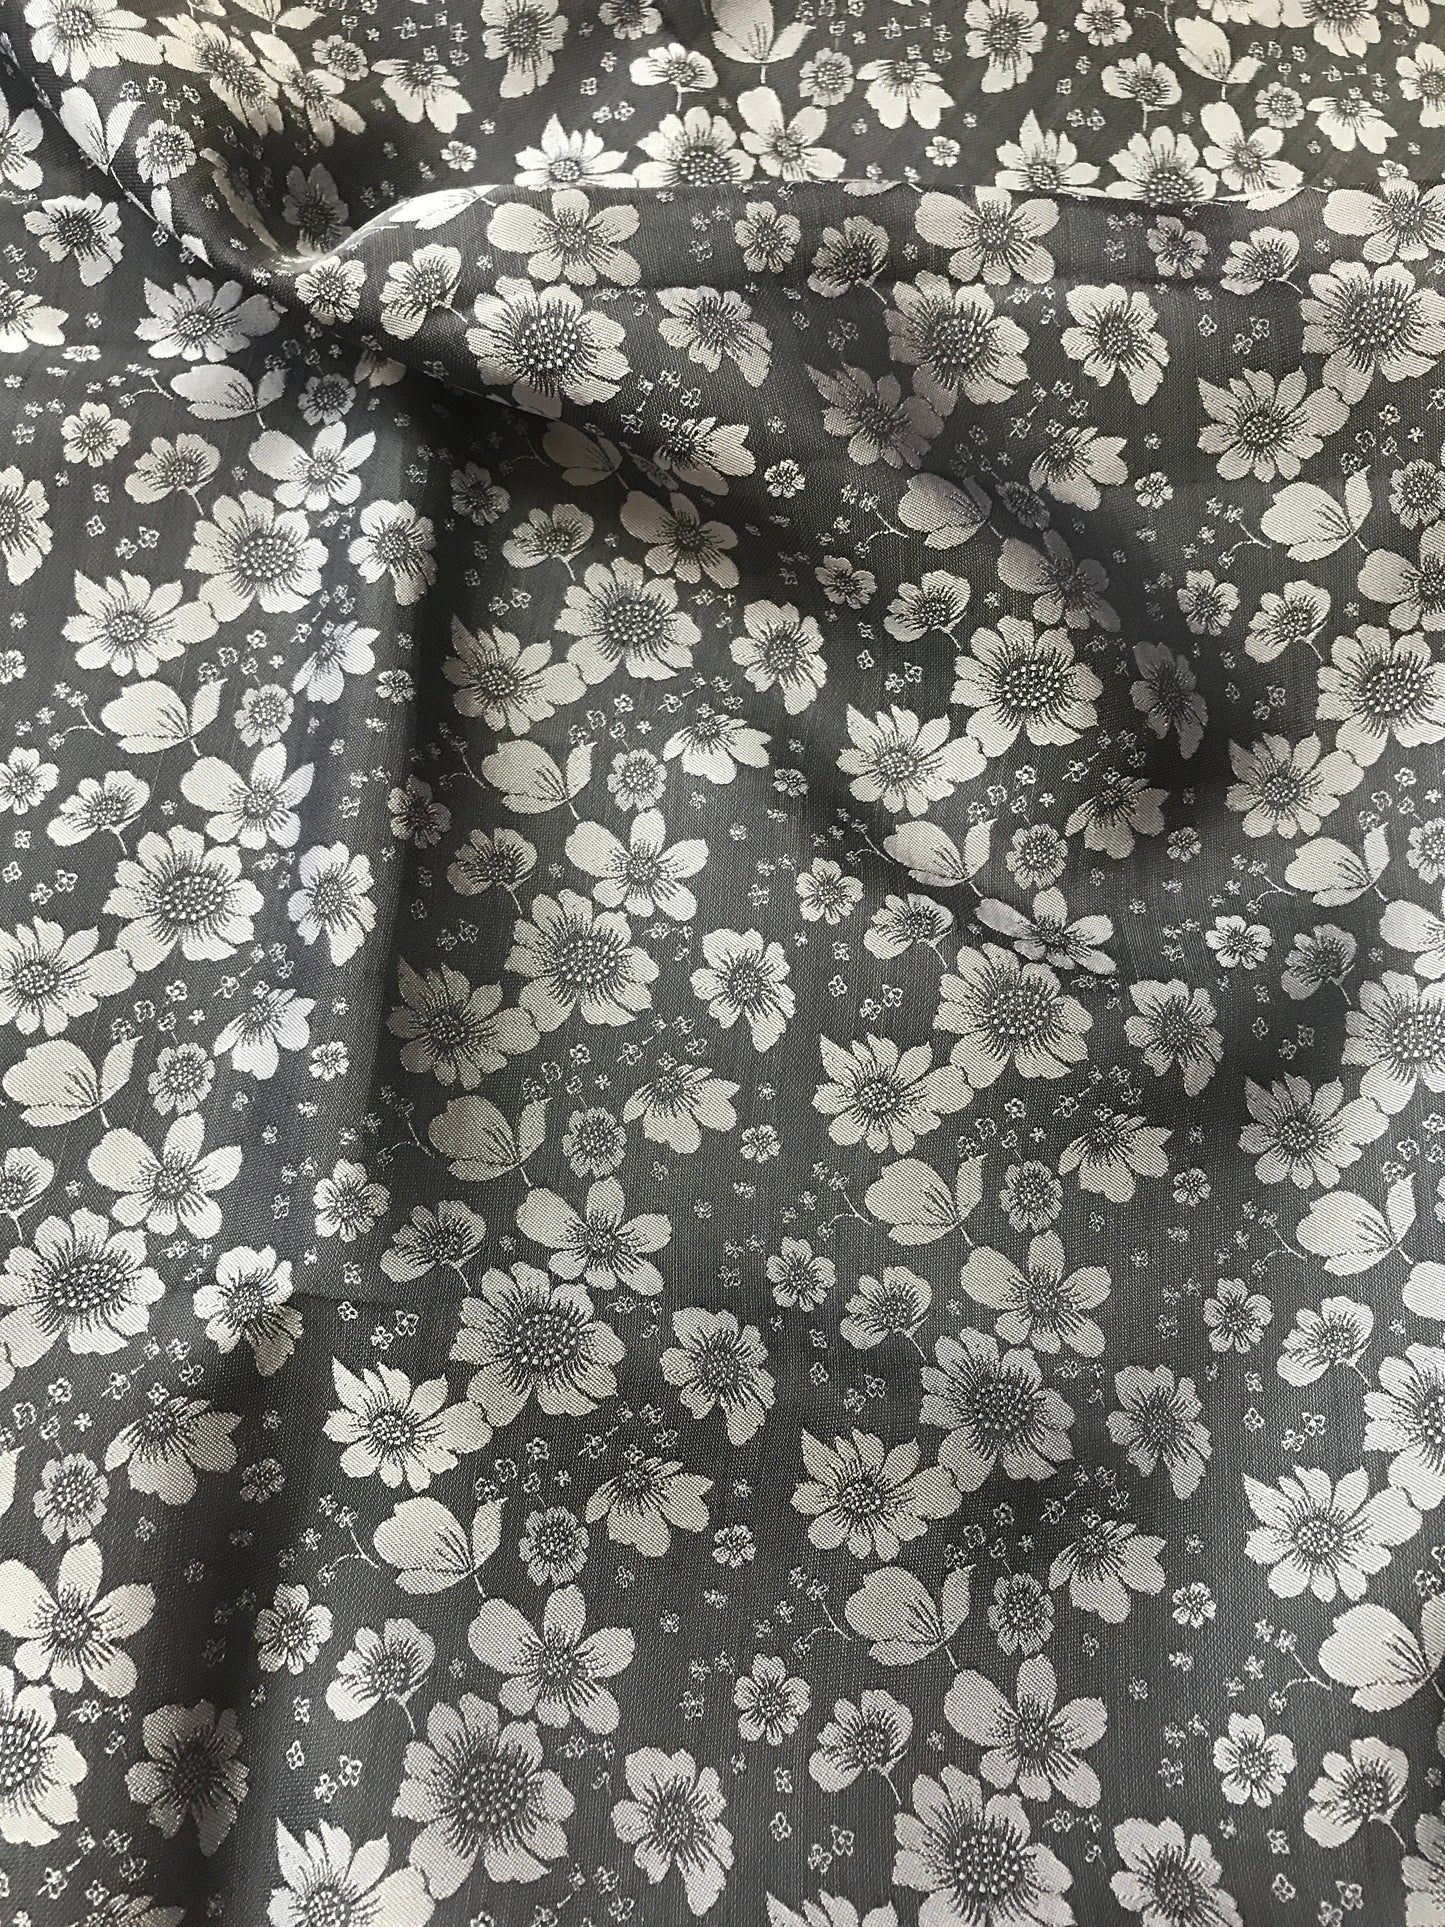 Dark Grey silk with flowers - PURE MULBERRY SILK fabric by the yard - Shadow Grey silk with flowers - Floral Silk -Luxury Silk - Natural silk - Handmade in VietNam